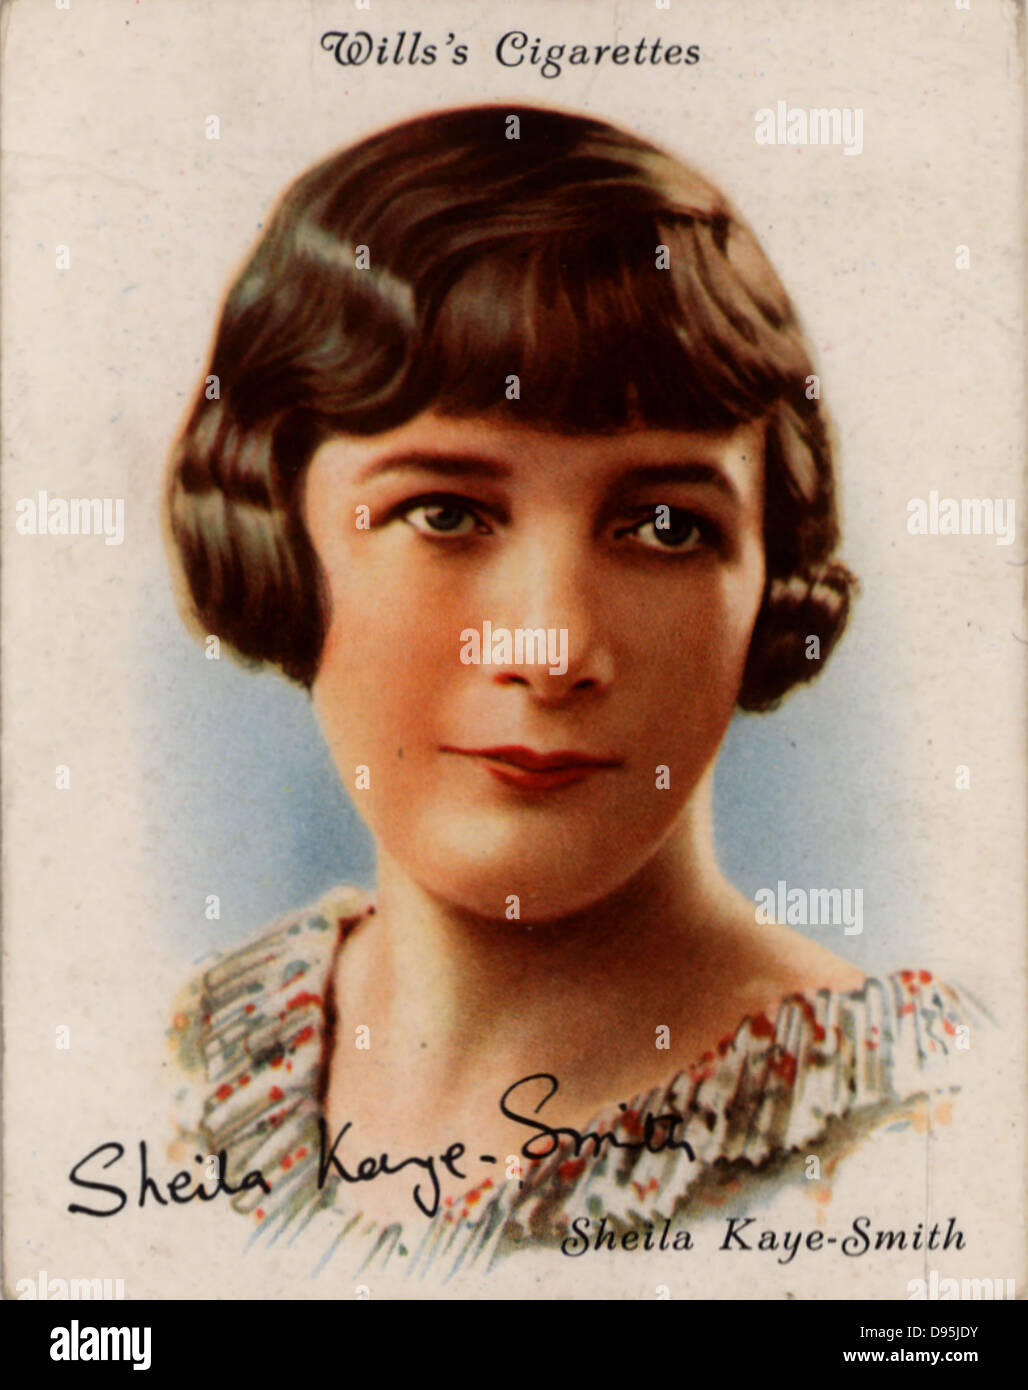 Kaye-Smith Sheila (1887-1956), britischer Schriftsteller, die über Sussex schrieb, auf Land fragen und soziale Schichtung. Sie war eine der Autoren Persifliert von Stella Gibbons in "Cold Comfort Farm" (1934). Aus einer Reihe von Karten der berühmten britischen Autoren (London, 1937). Stockfoto